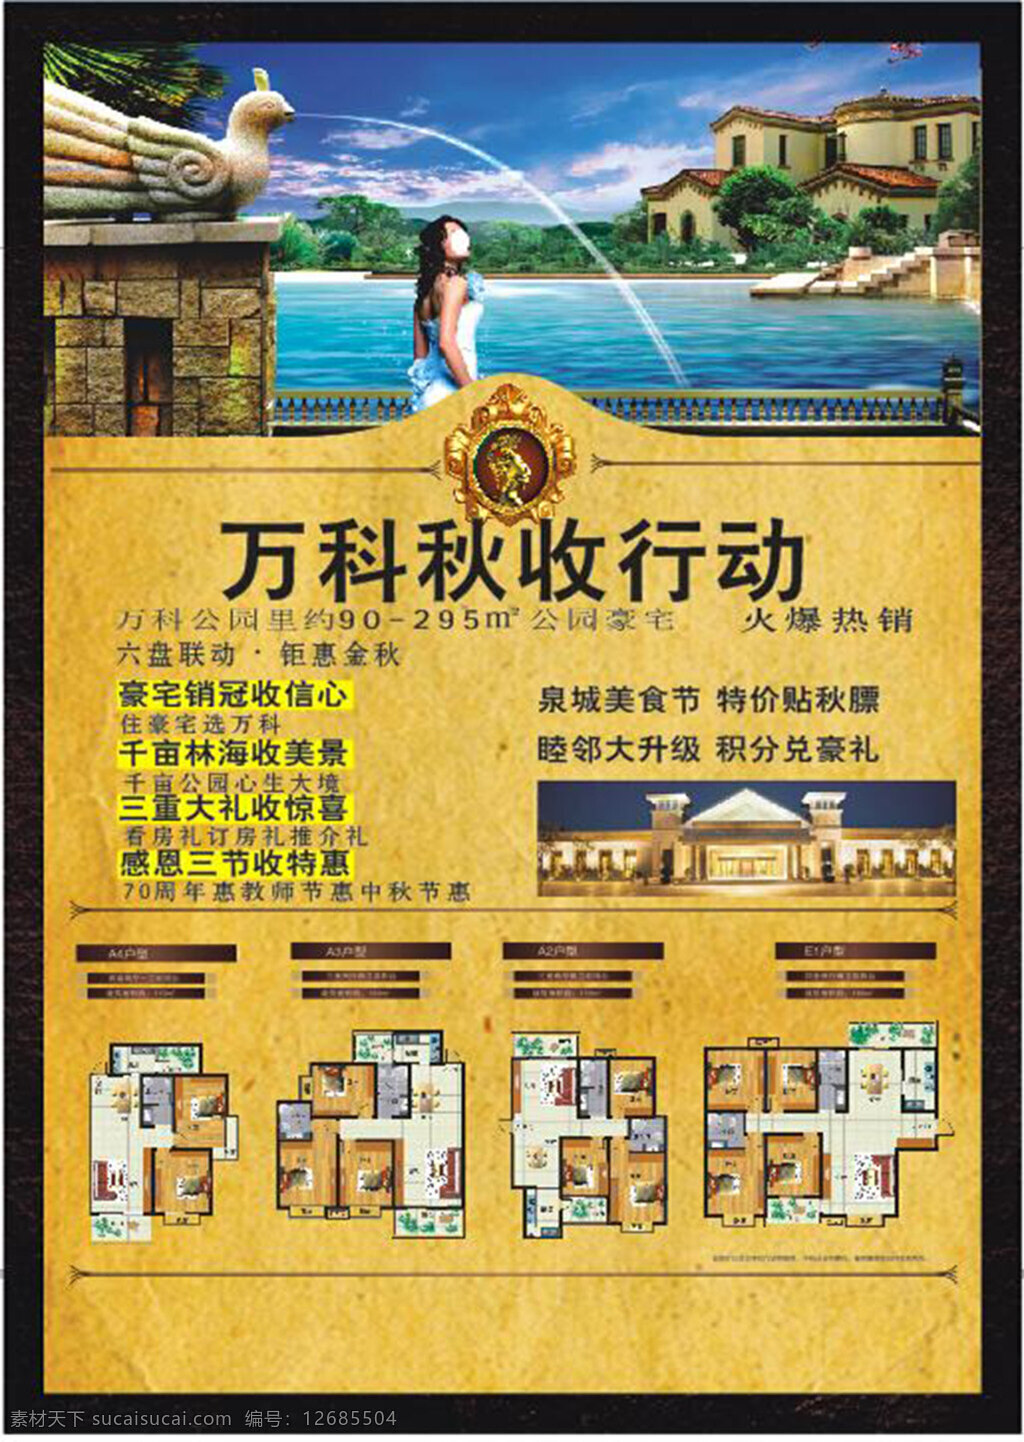 地产 楼盘 宣传海报 海报 房子背景 黄色背景 简洁明了 海边房景 房型图 展板